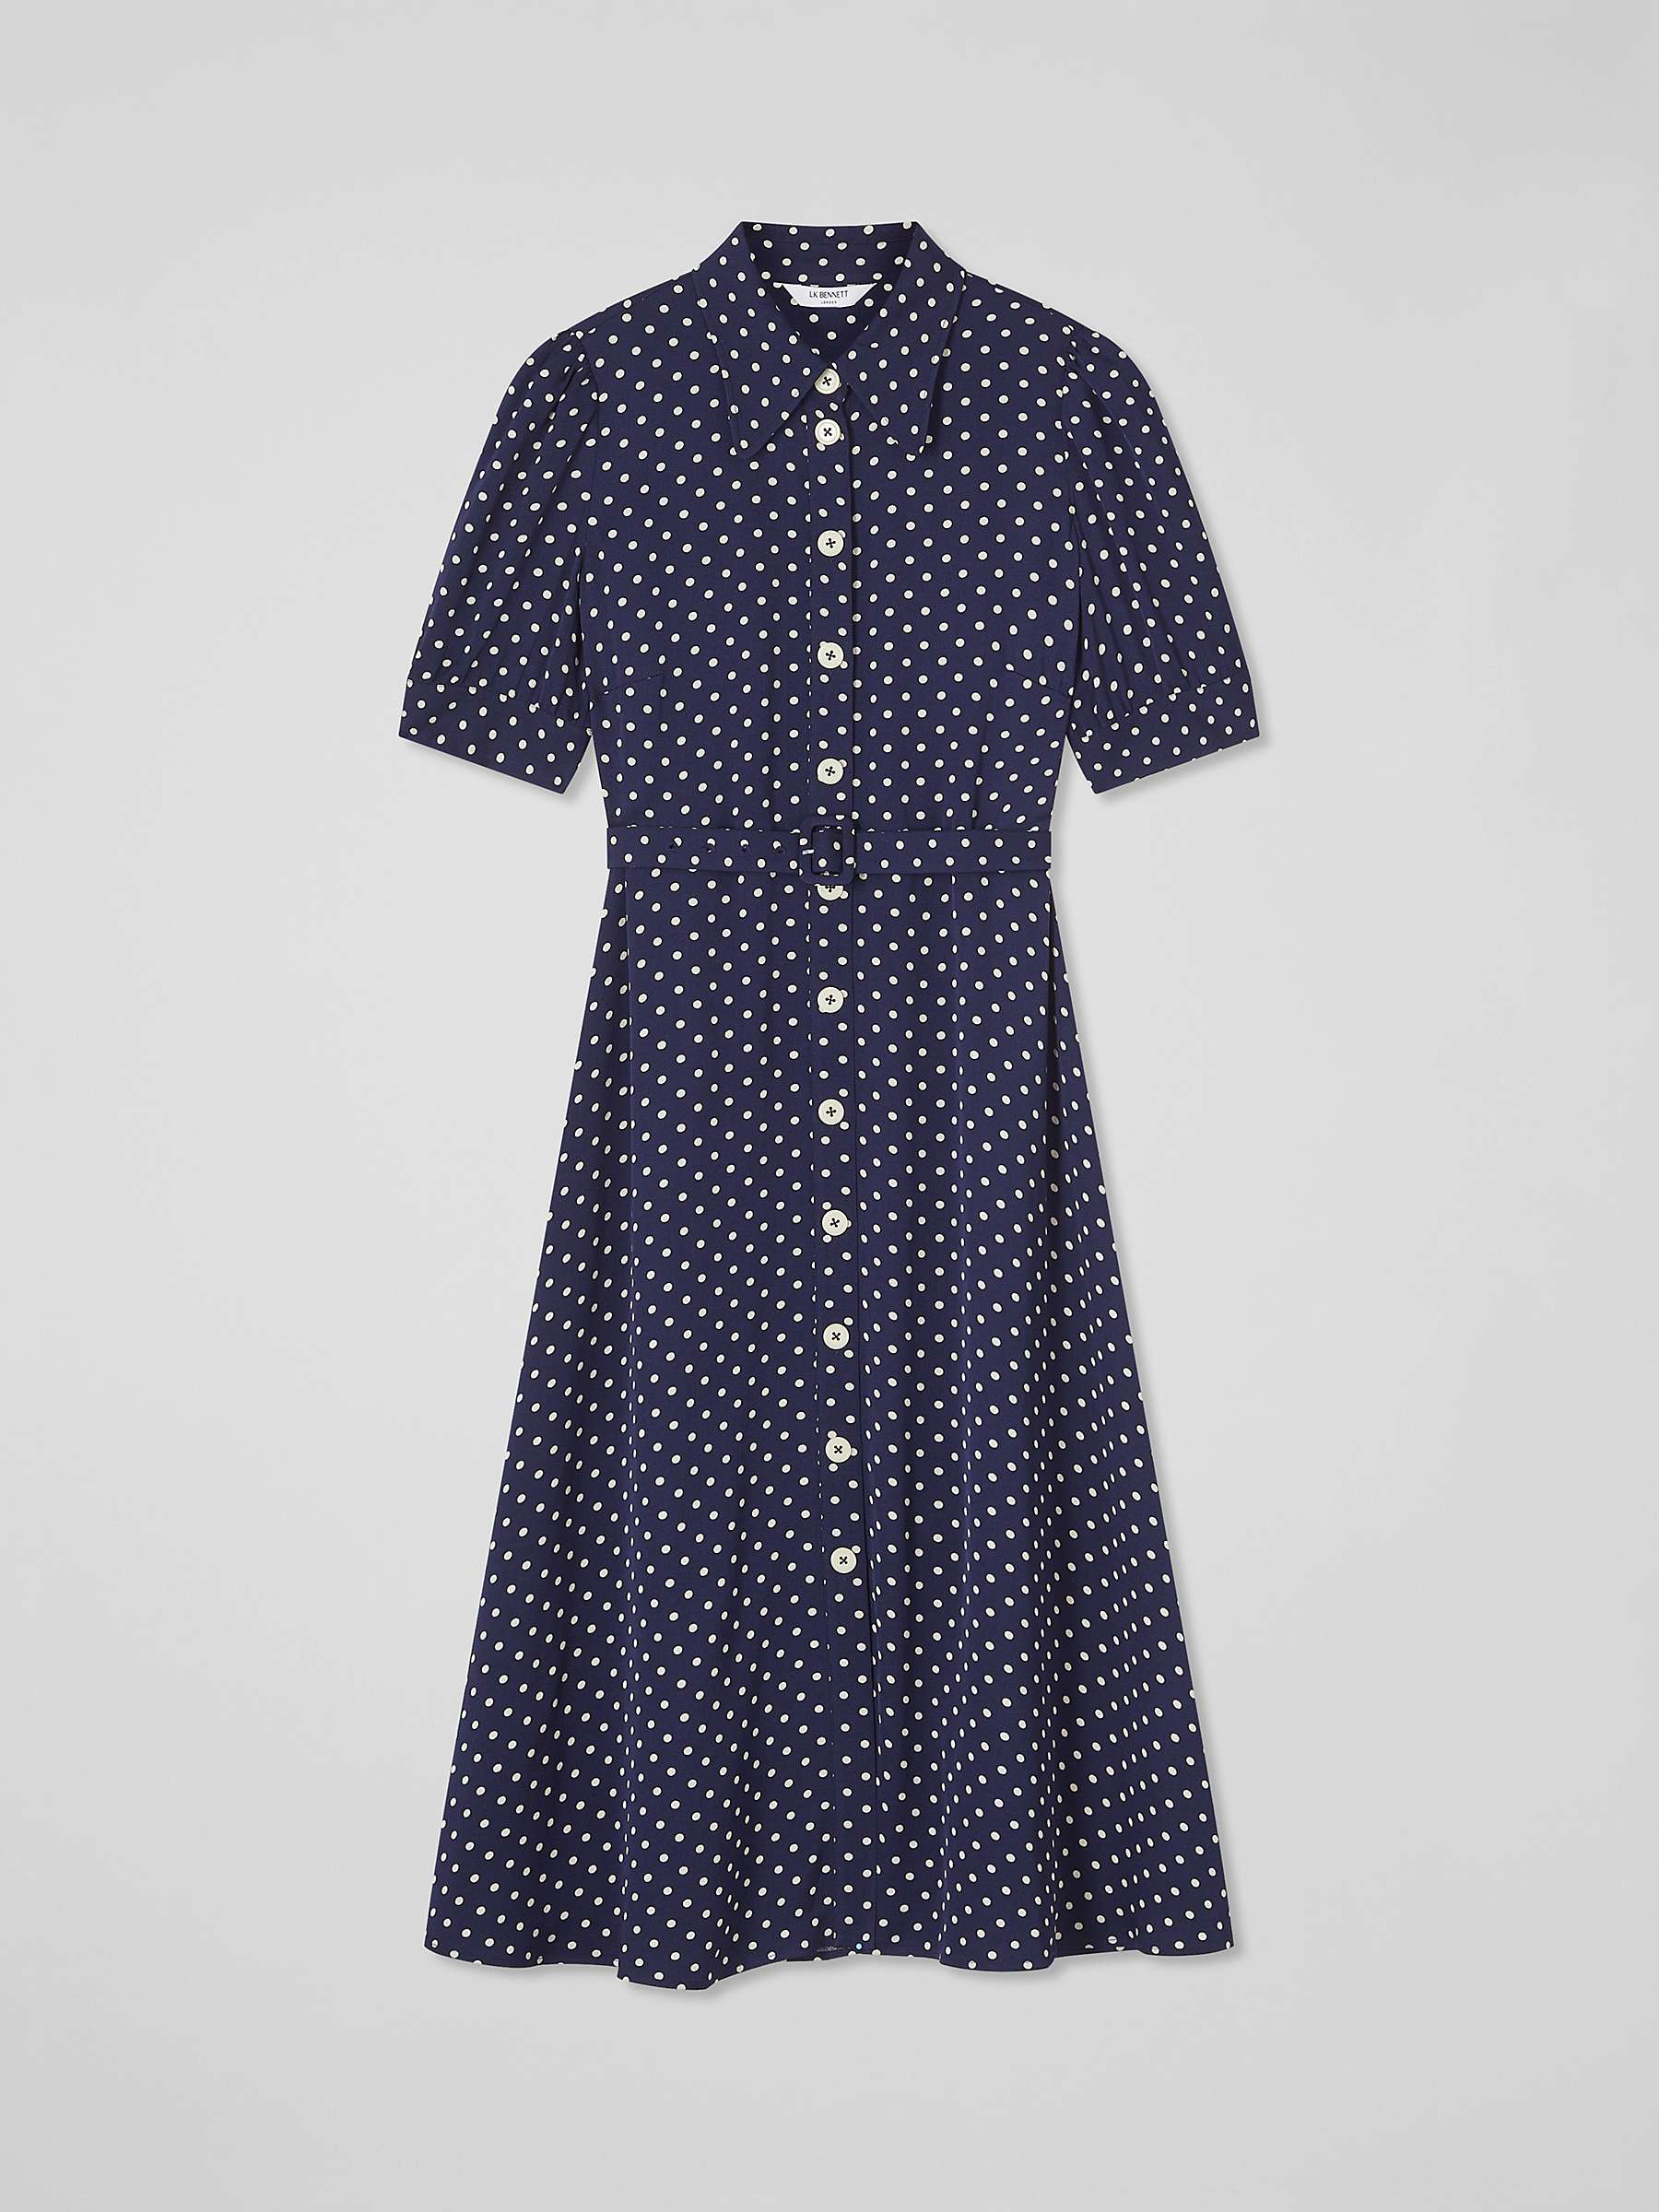 Buy L.K.Bennett Valerie Spot Print Shirt Midi Dress, Navy/Cream Online at johnlewis.com